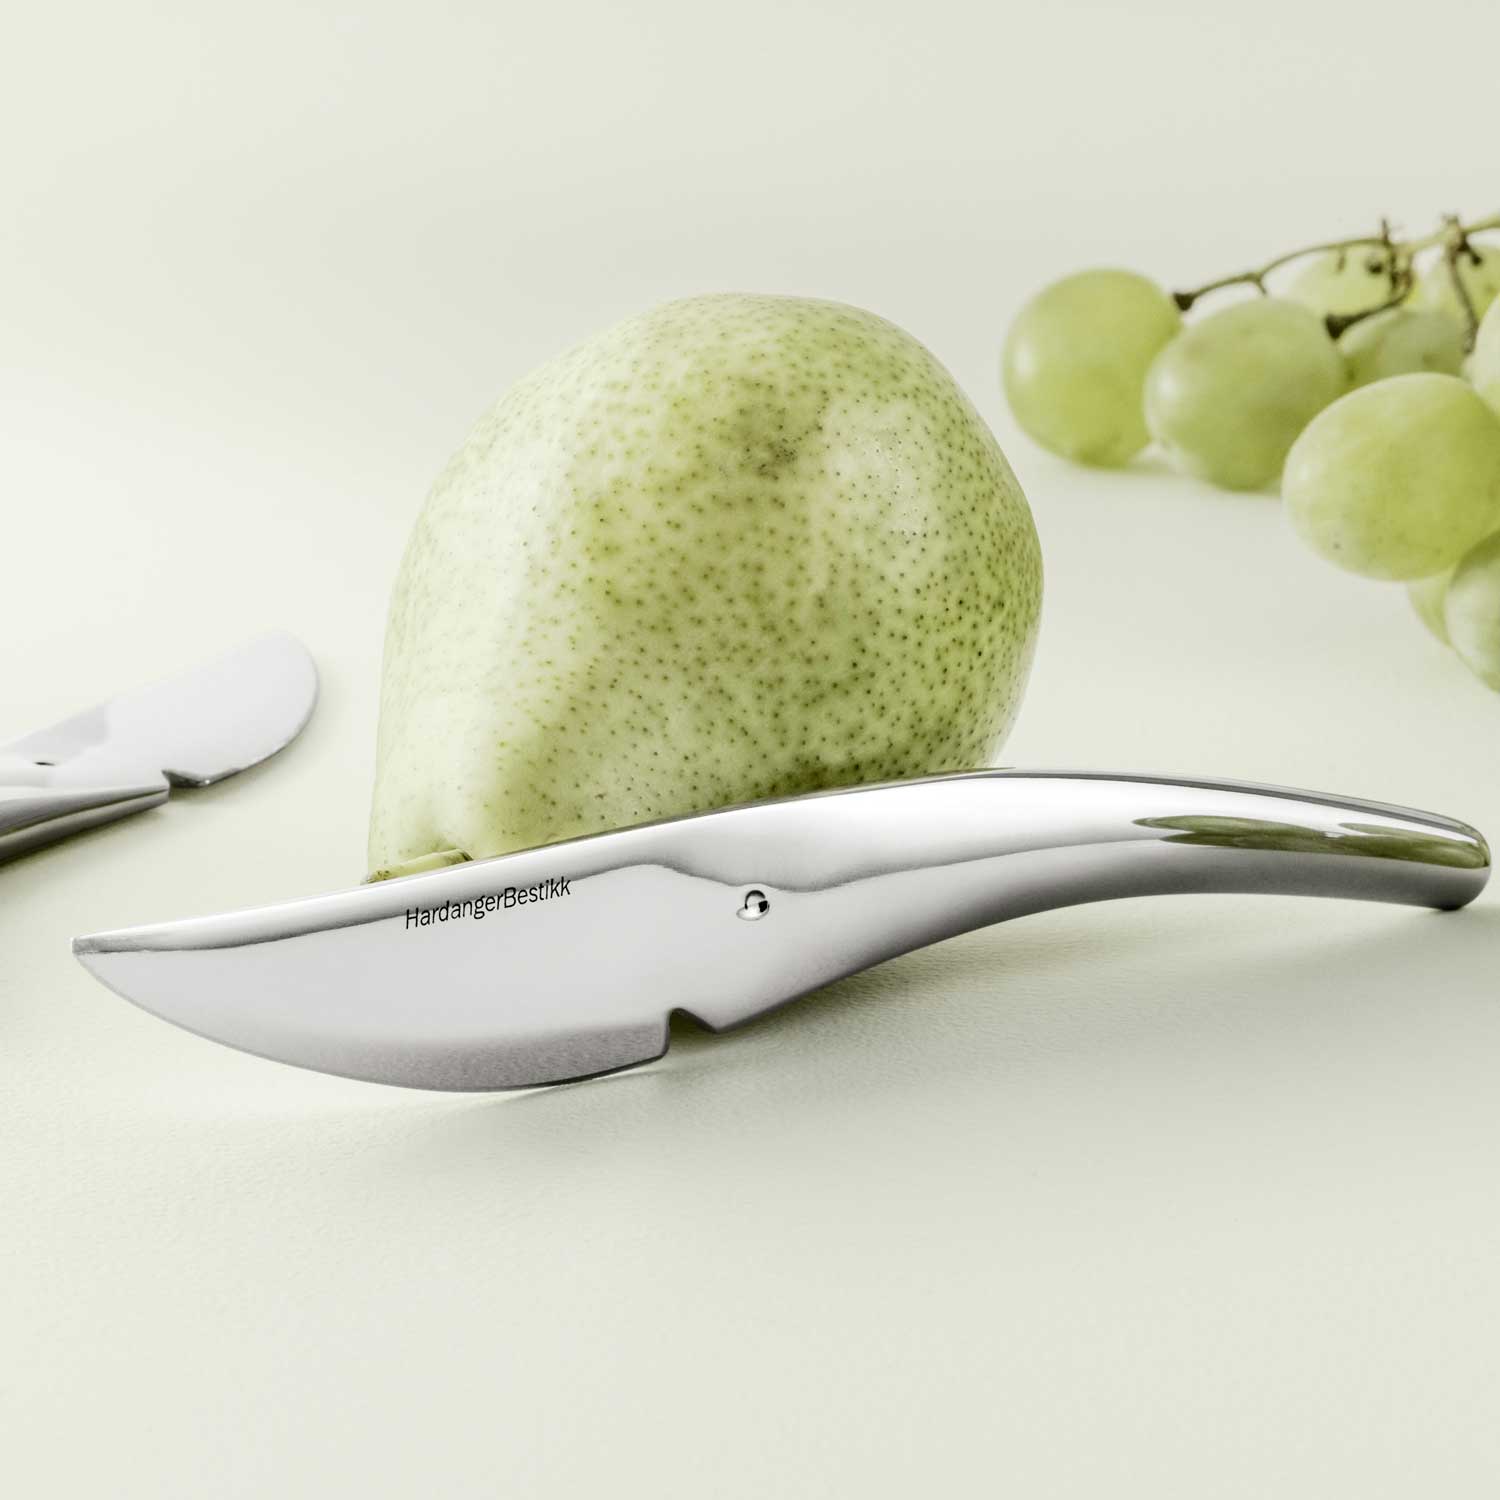 https://royaldesign.com/image/2/hardanger-fruit-knife-6-pack-3